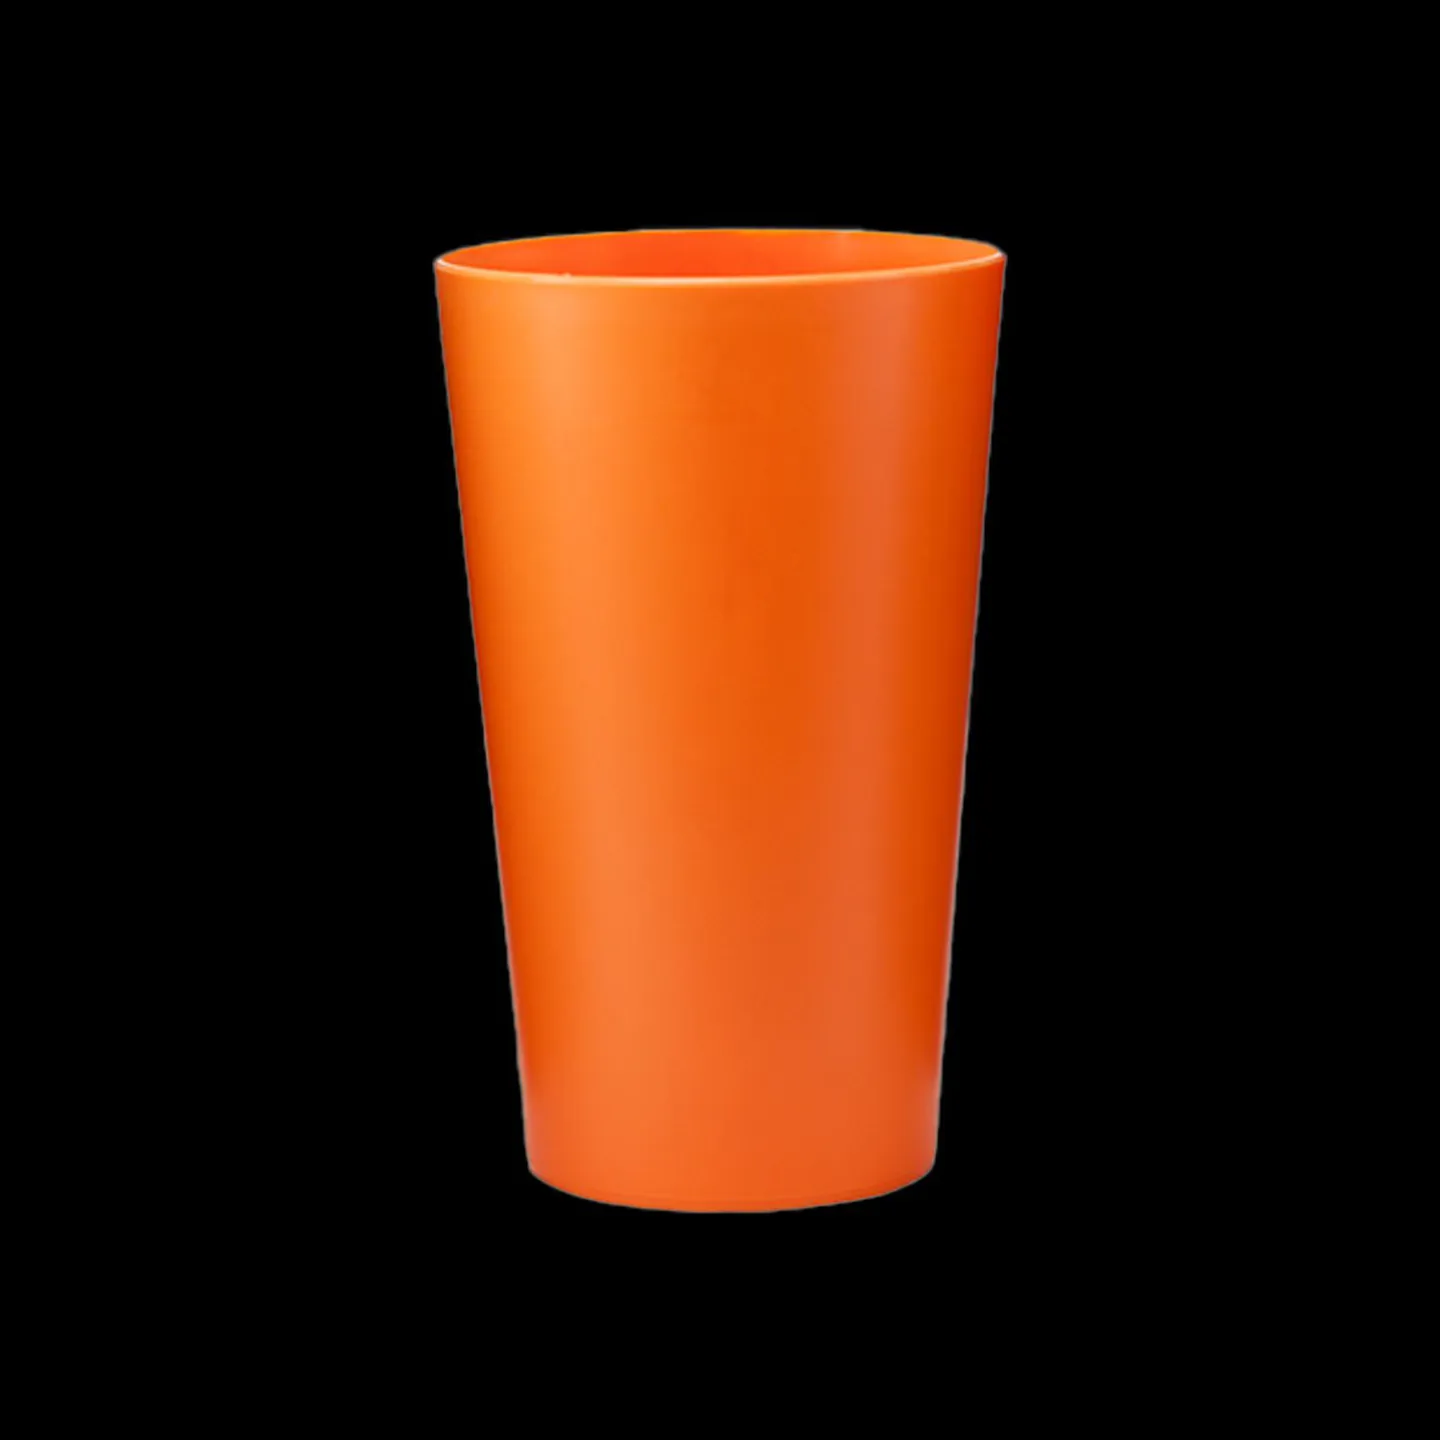 Eco kunststof glas oranje kopen.